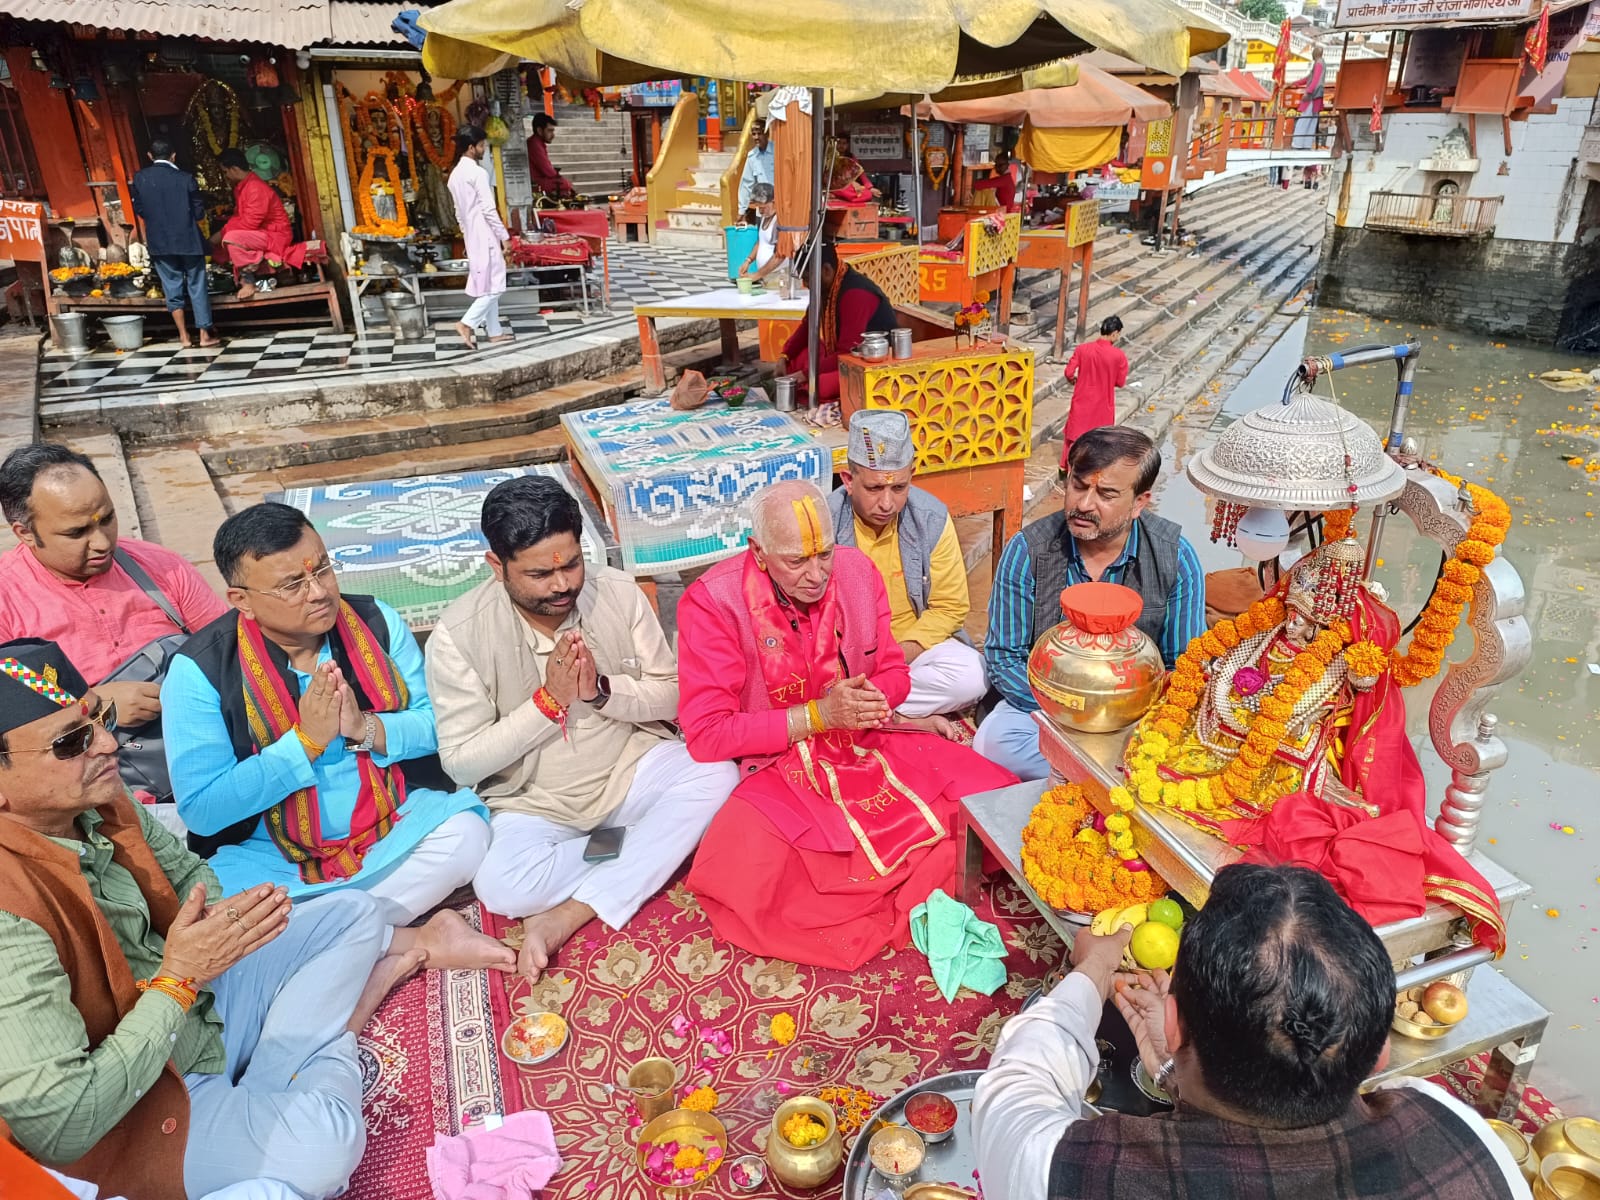 yellow rice, उत्तराखंड को मिला,पीले चावलों की भेंट के साथ अयोध्या में राम मंदिर स्थापना का न्योता